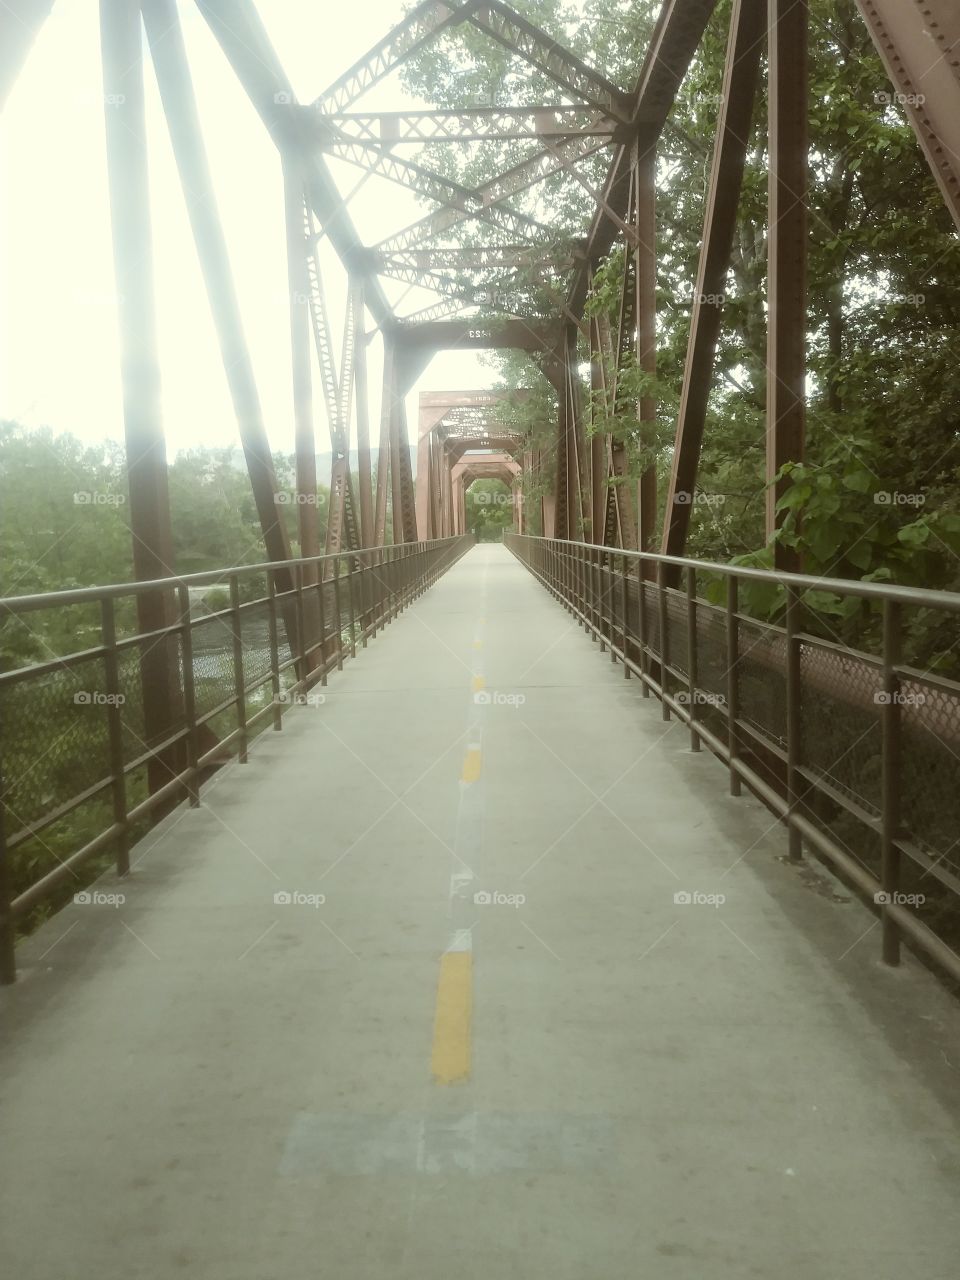 rustic bridge